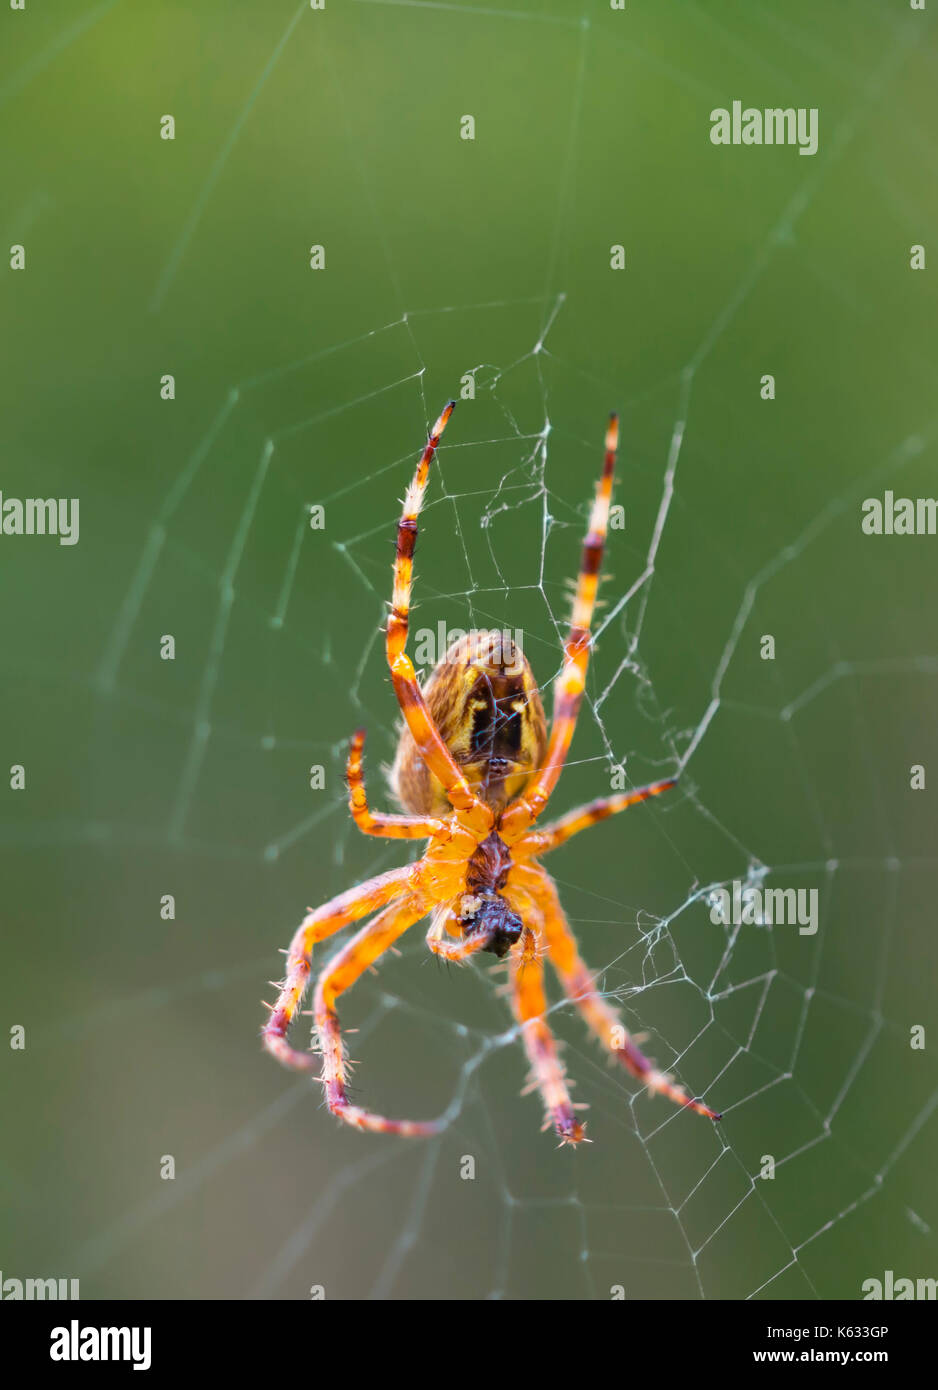 Araneus Diadematus (European Garden Spider, Spider Diadem, Cross Spider), un orb Weaver araignée sur un site web à l'automne au Royaume-Uni. Araignee macro. Banque D'Images